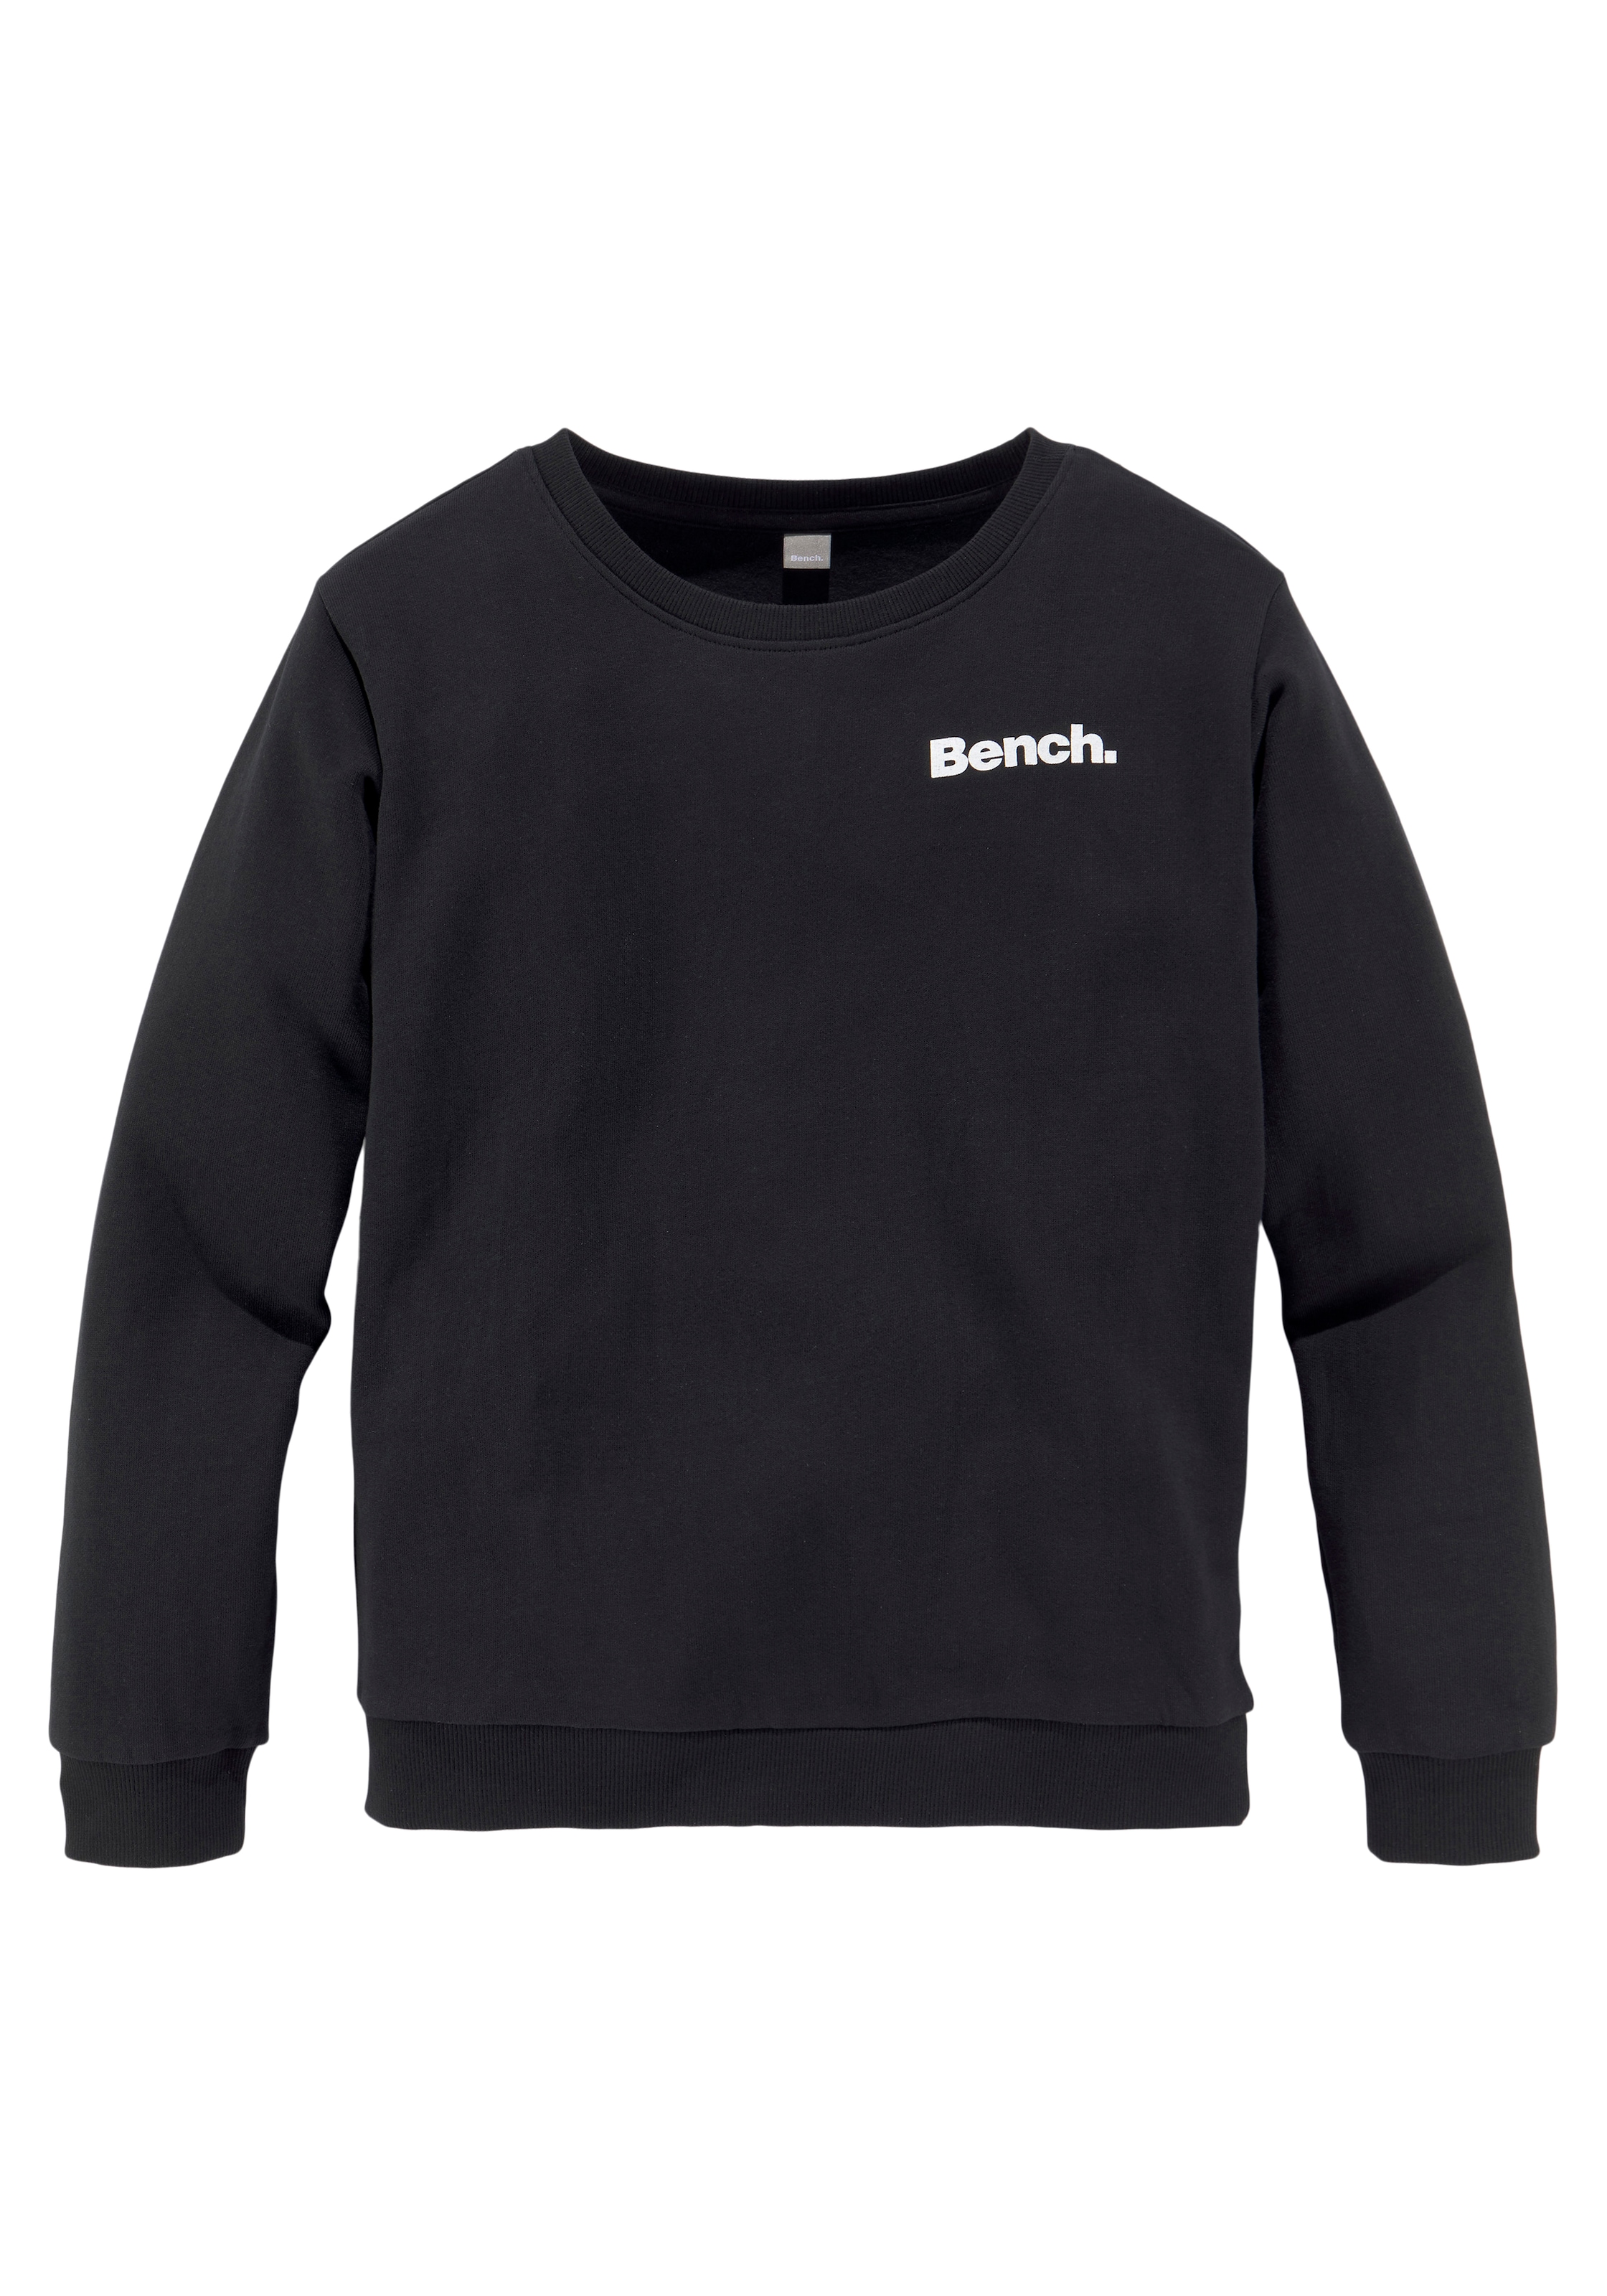 CITY«, Bench. »NEW YORK kaufen Sweatshirt mit Rückendruck